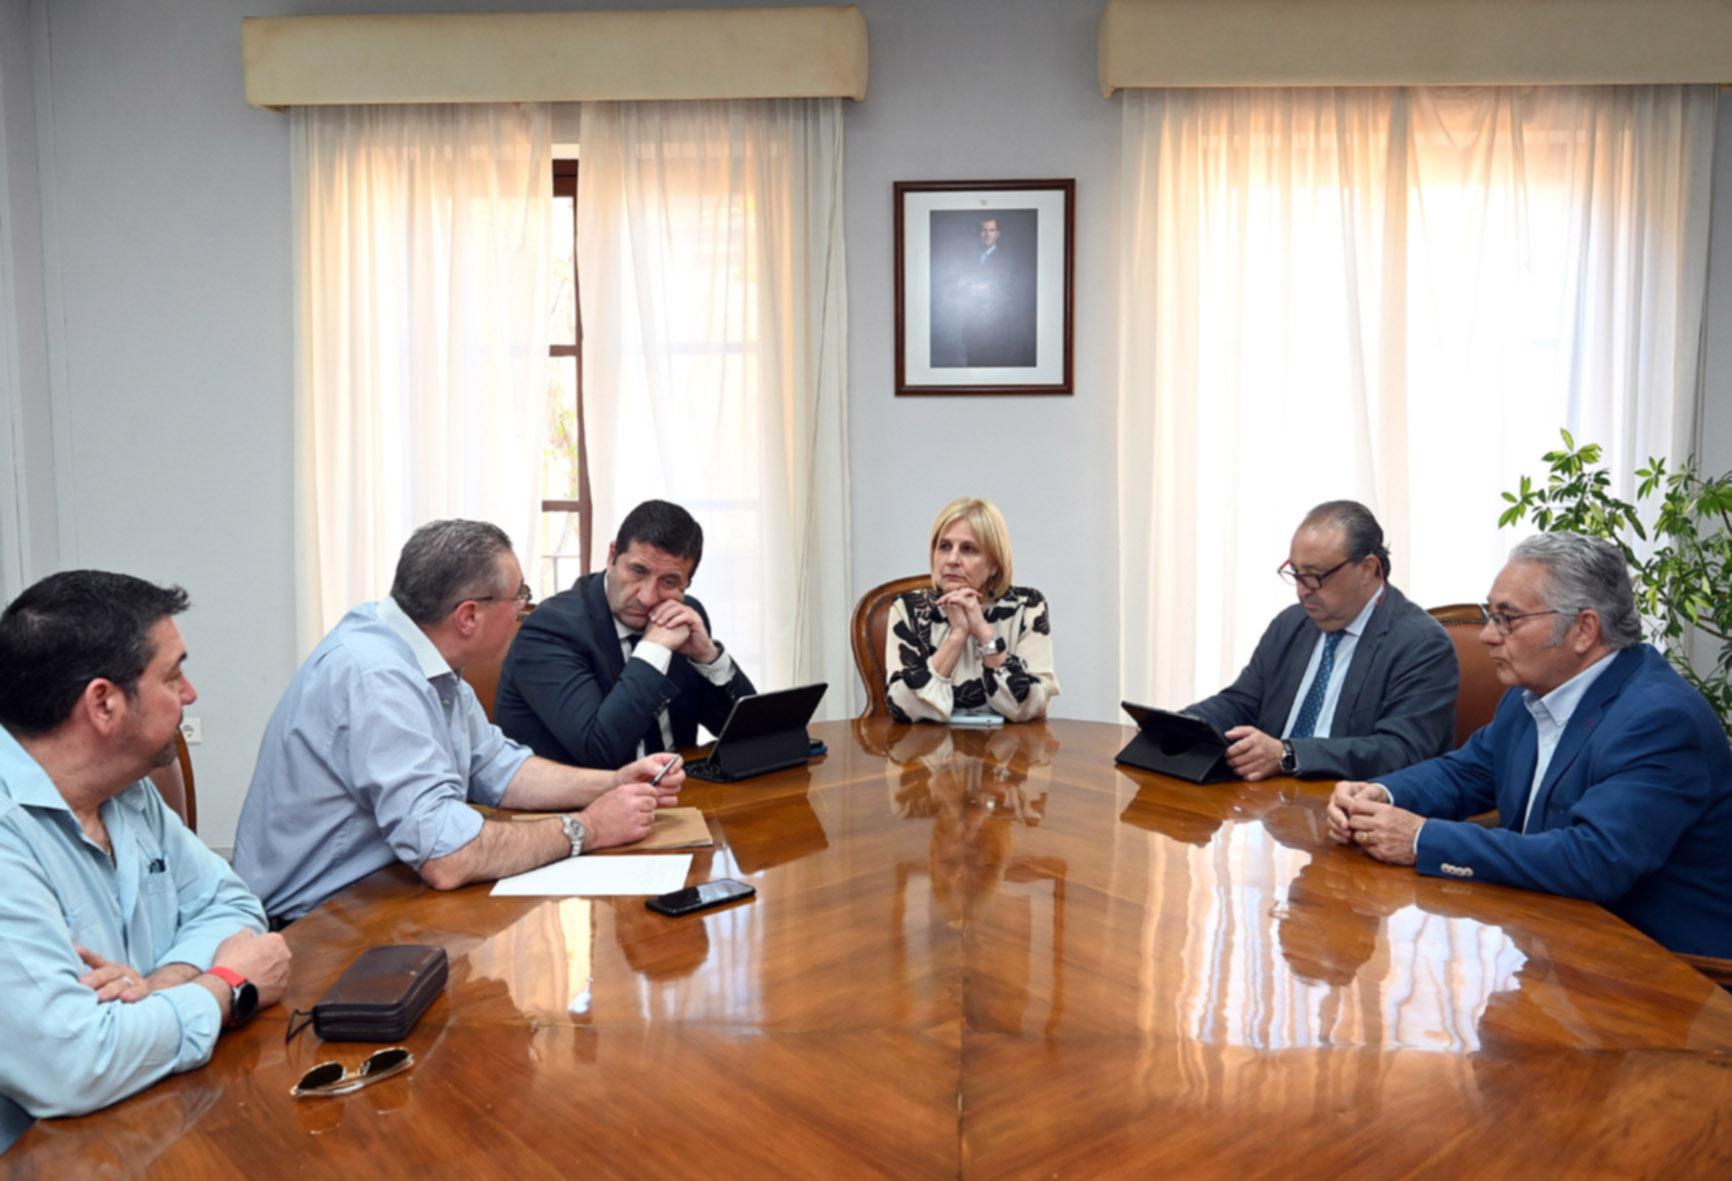 Reunión entre la Orden de Caballería de Santa Bárbara y el Ayuntamiento de Jerez para estudiar colaboraciones culturales y educativas